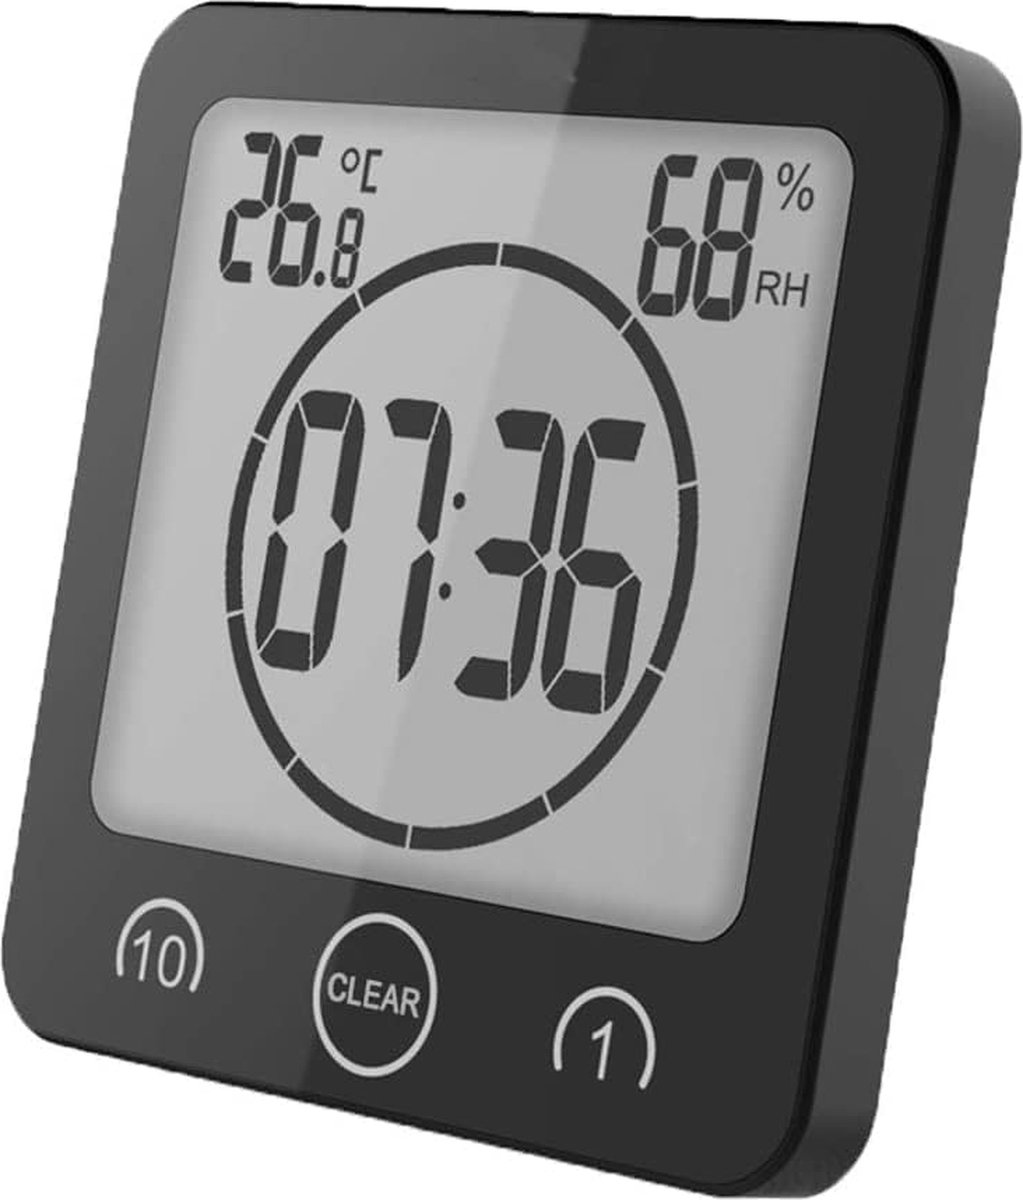 Douche Timer met Waterdicht Ontwerp, Hygrometer, en Thermometer - Energiebesparing en Comfortabele Douche - Badkamer Gadget voor Milieubewust Leven